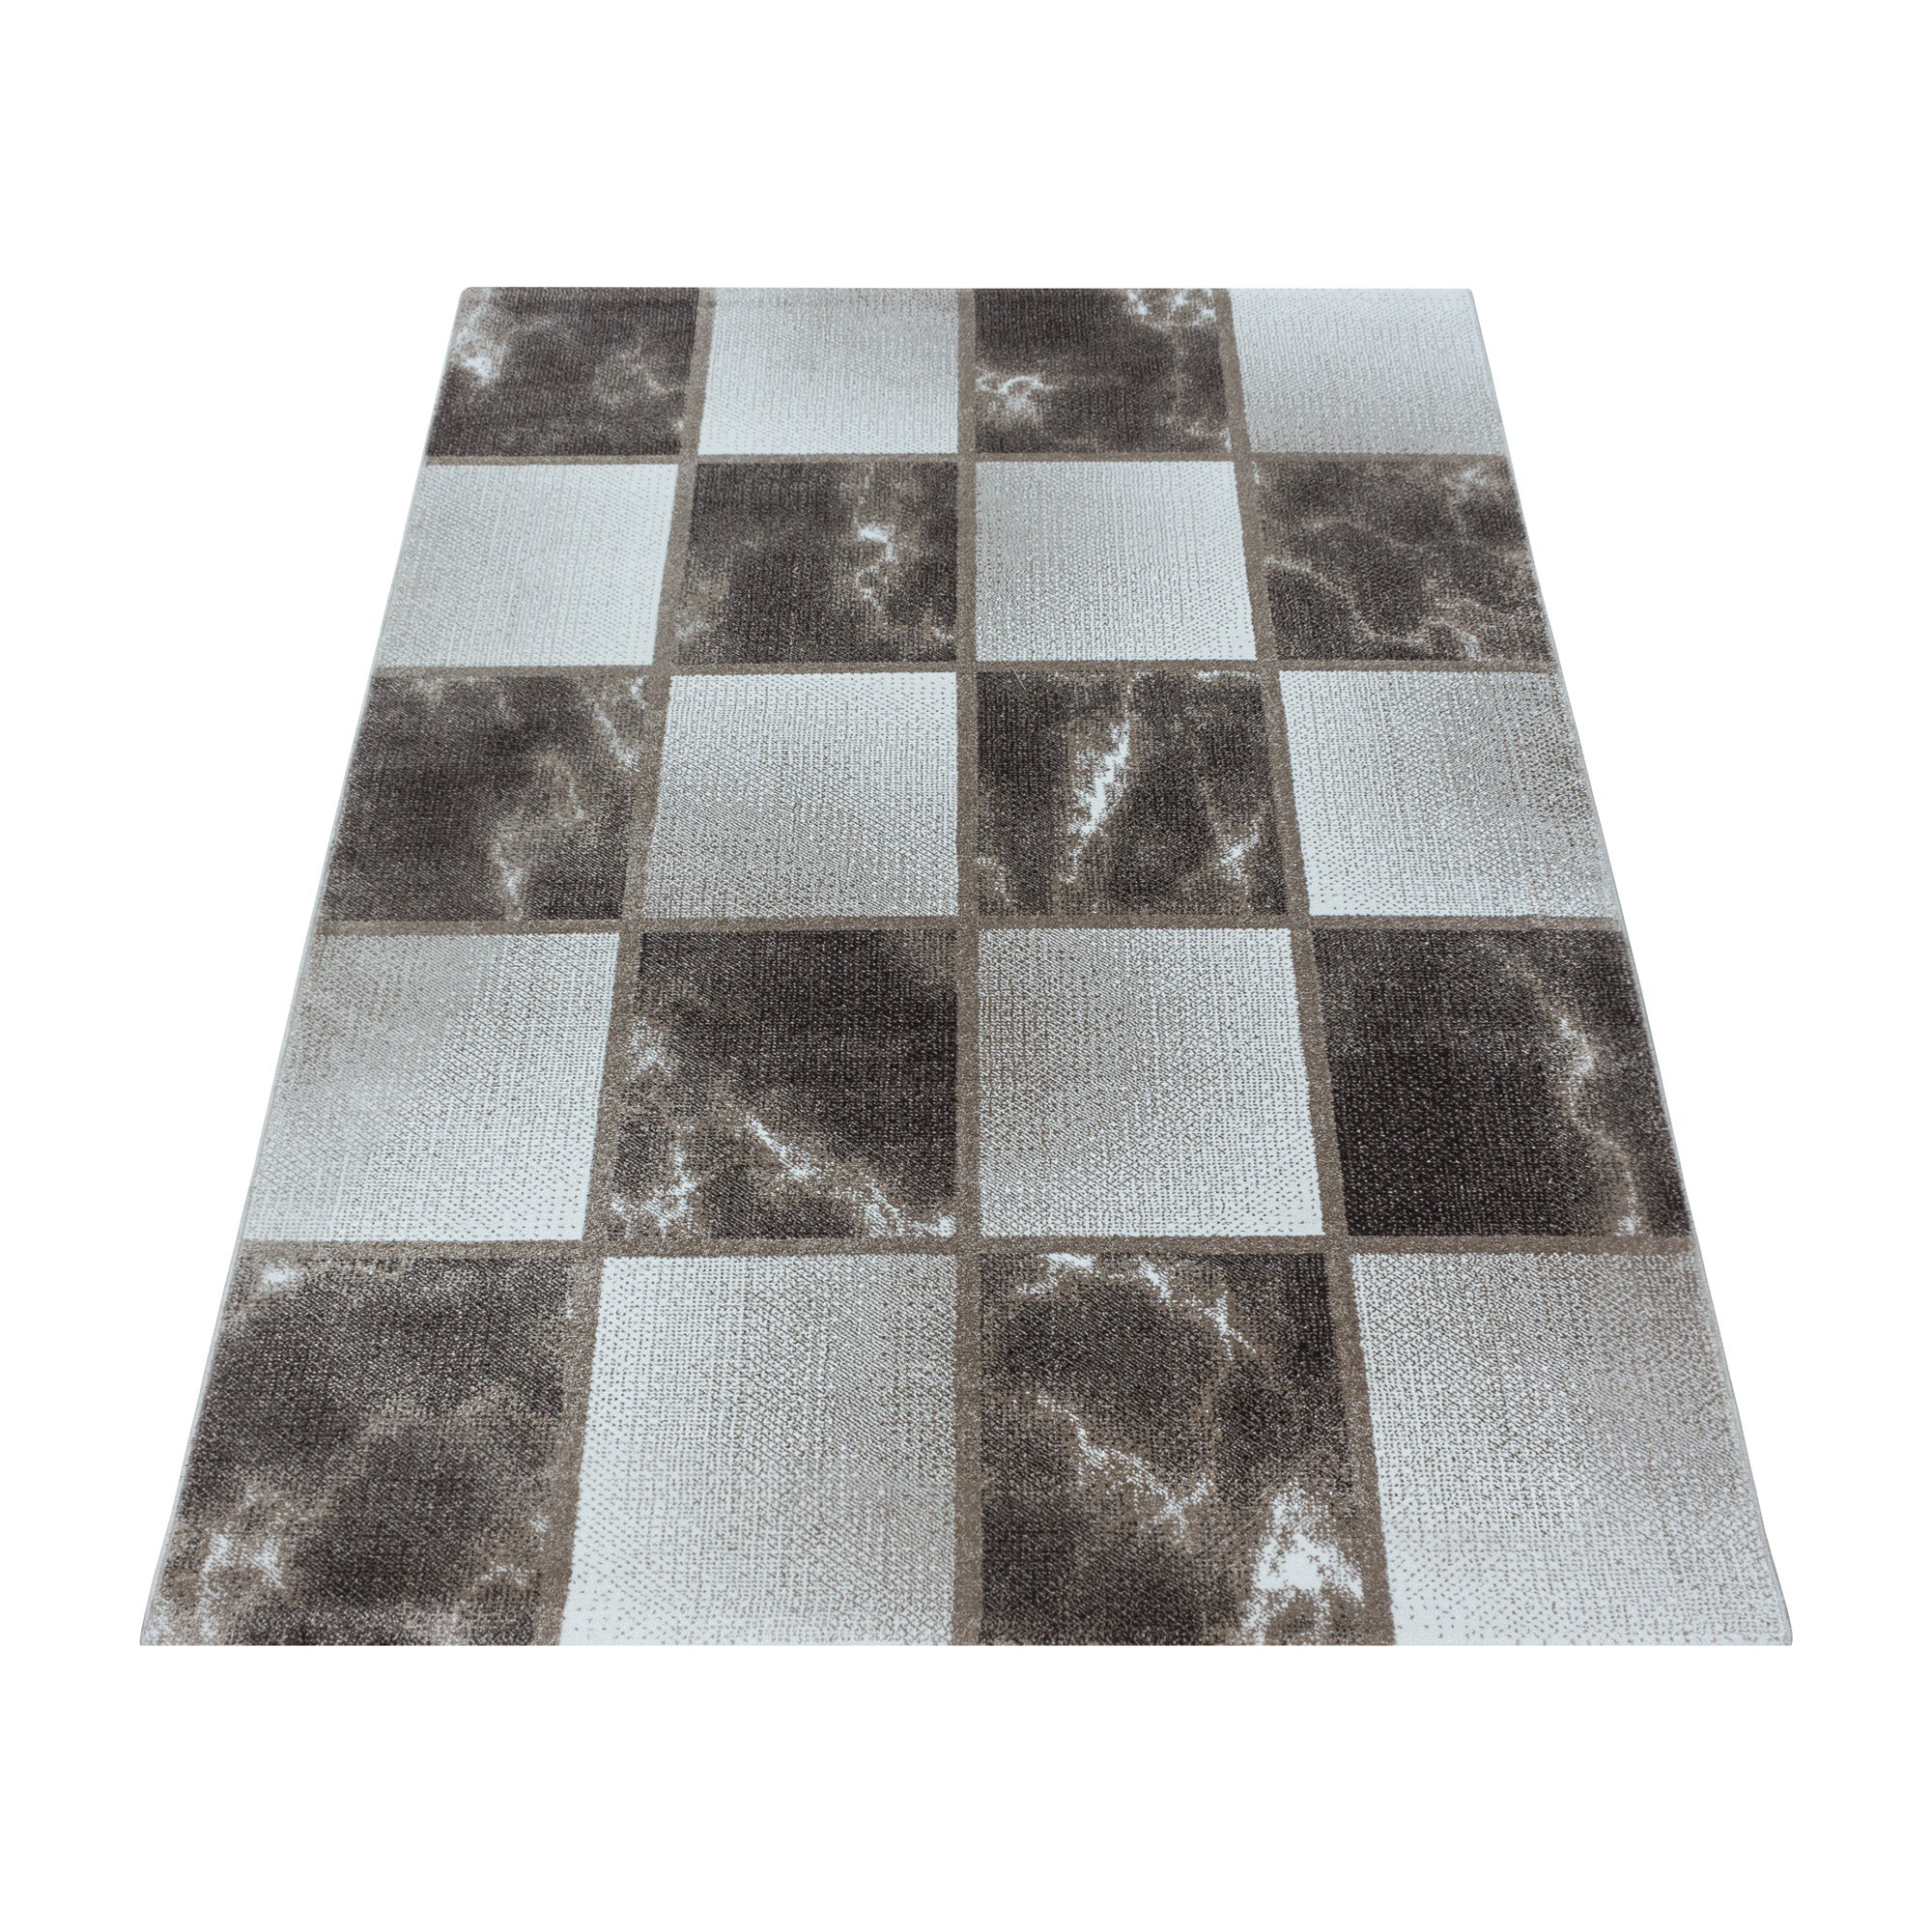 Kurzflor Teppich Braun Grau Quadrat Muster Marmoriert Wohnzimmerteppich Weich